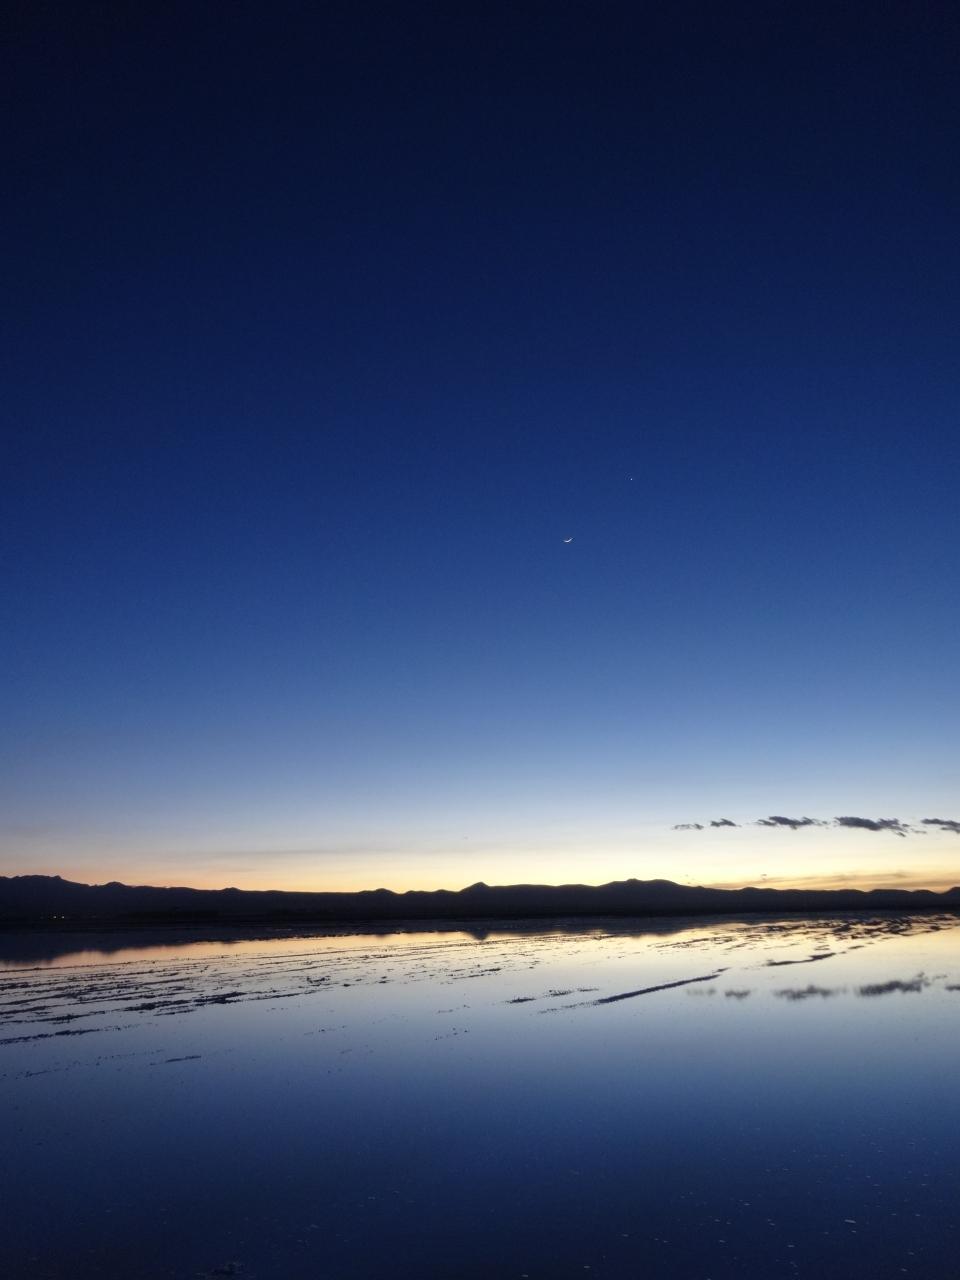 かつての絶景 １のマチュピチュ 現在の １のウユニ塩湖に絞った南米旅行 ウユニその ひねもす絶景の中にいると 頭の中が ウユニ ボリビア の旅行記 ブログ By パリ好きおばさん フォートラベル